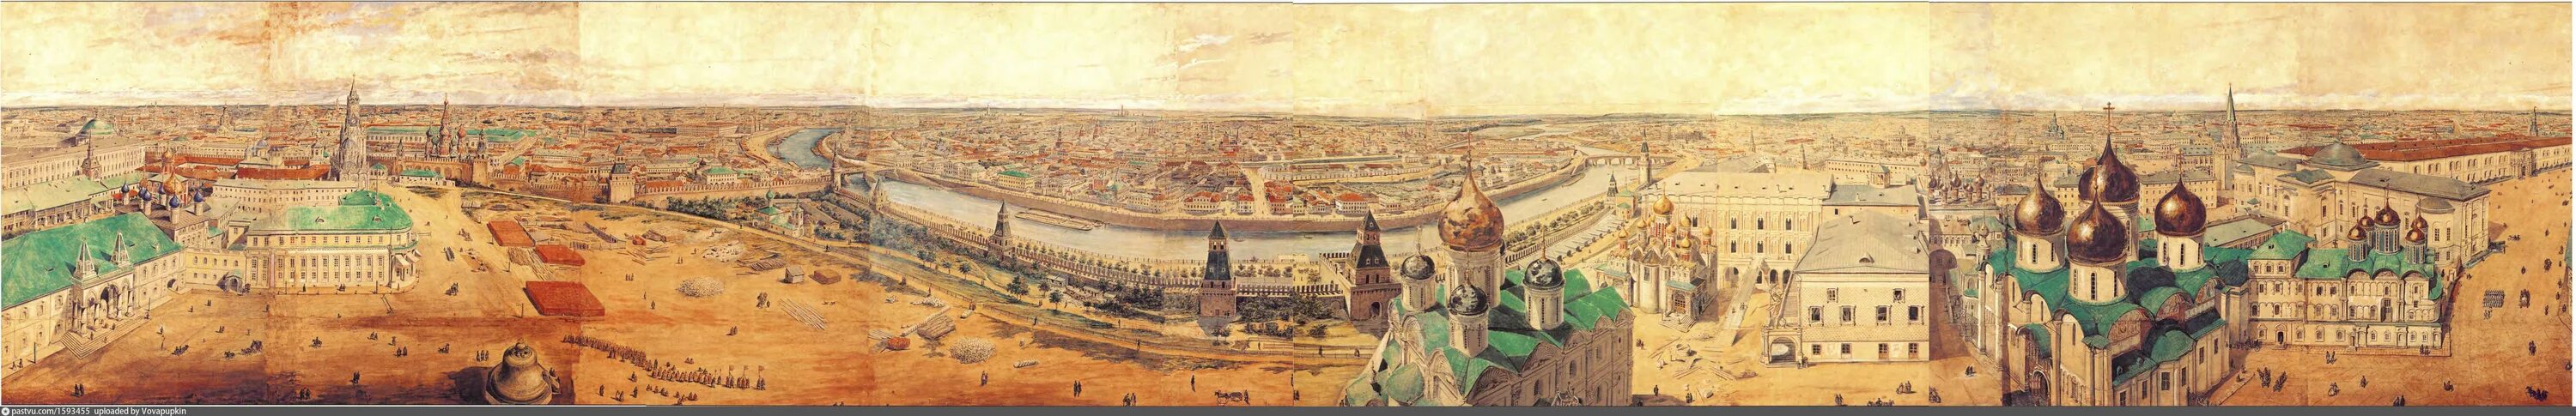 Колокольня Ивана Великого панорама. Круговая панорама с колокольни Ивана Великого. Серов панорама Кремля.